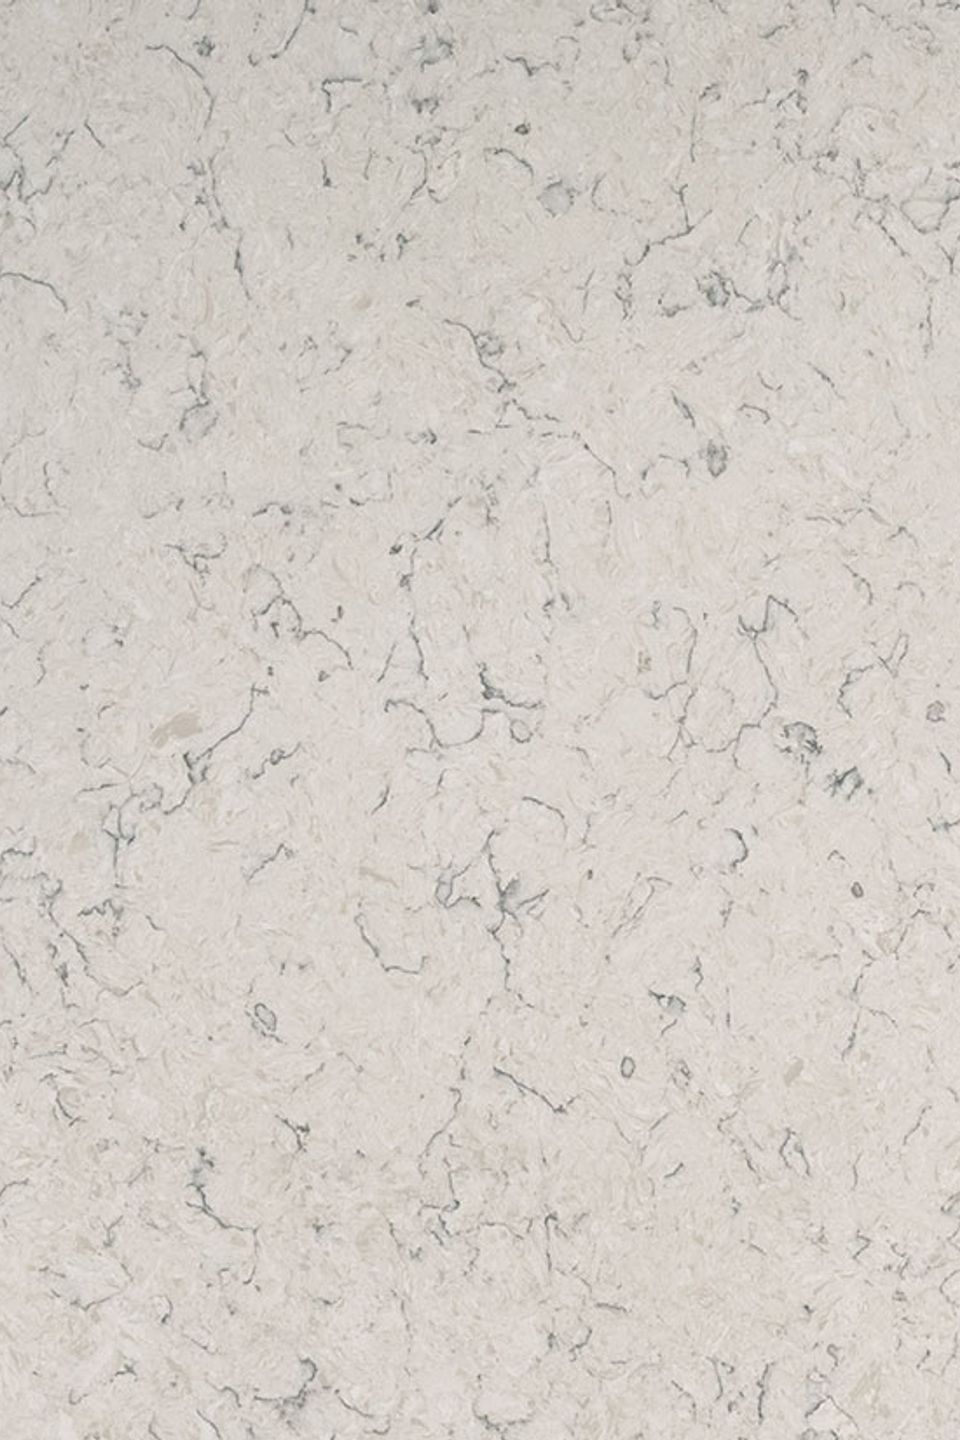 Carrara mist quartz